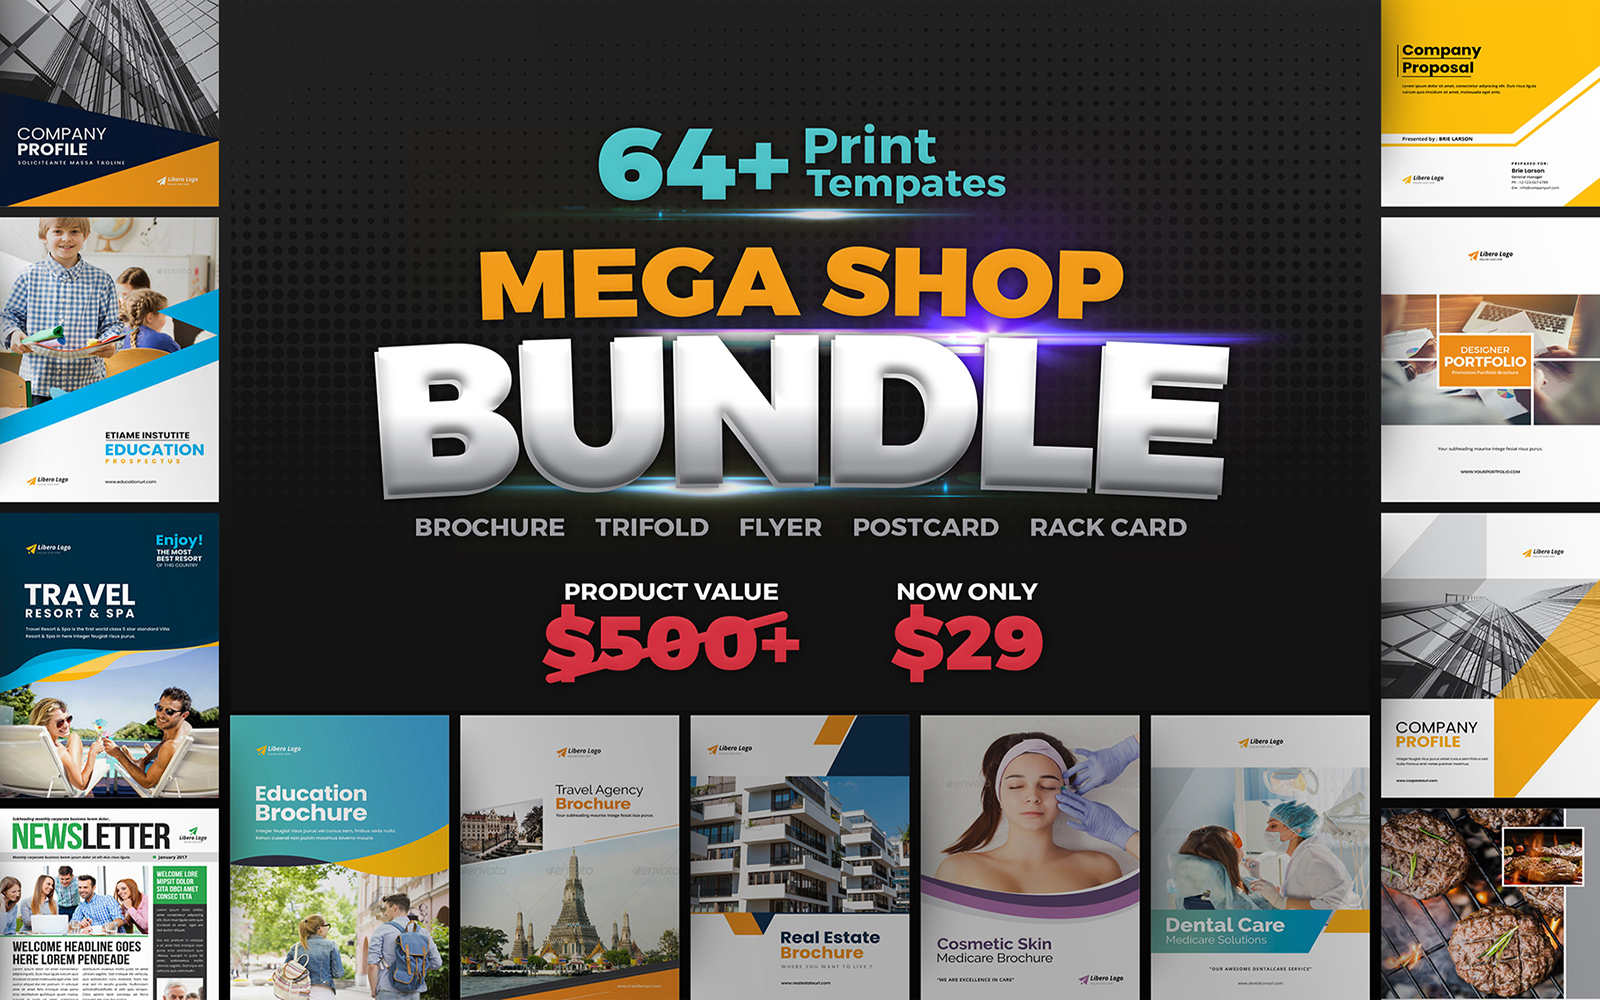 Mega Shop BUNDLE 64+ Print Design! - Corporate Identity Template